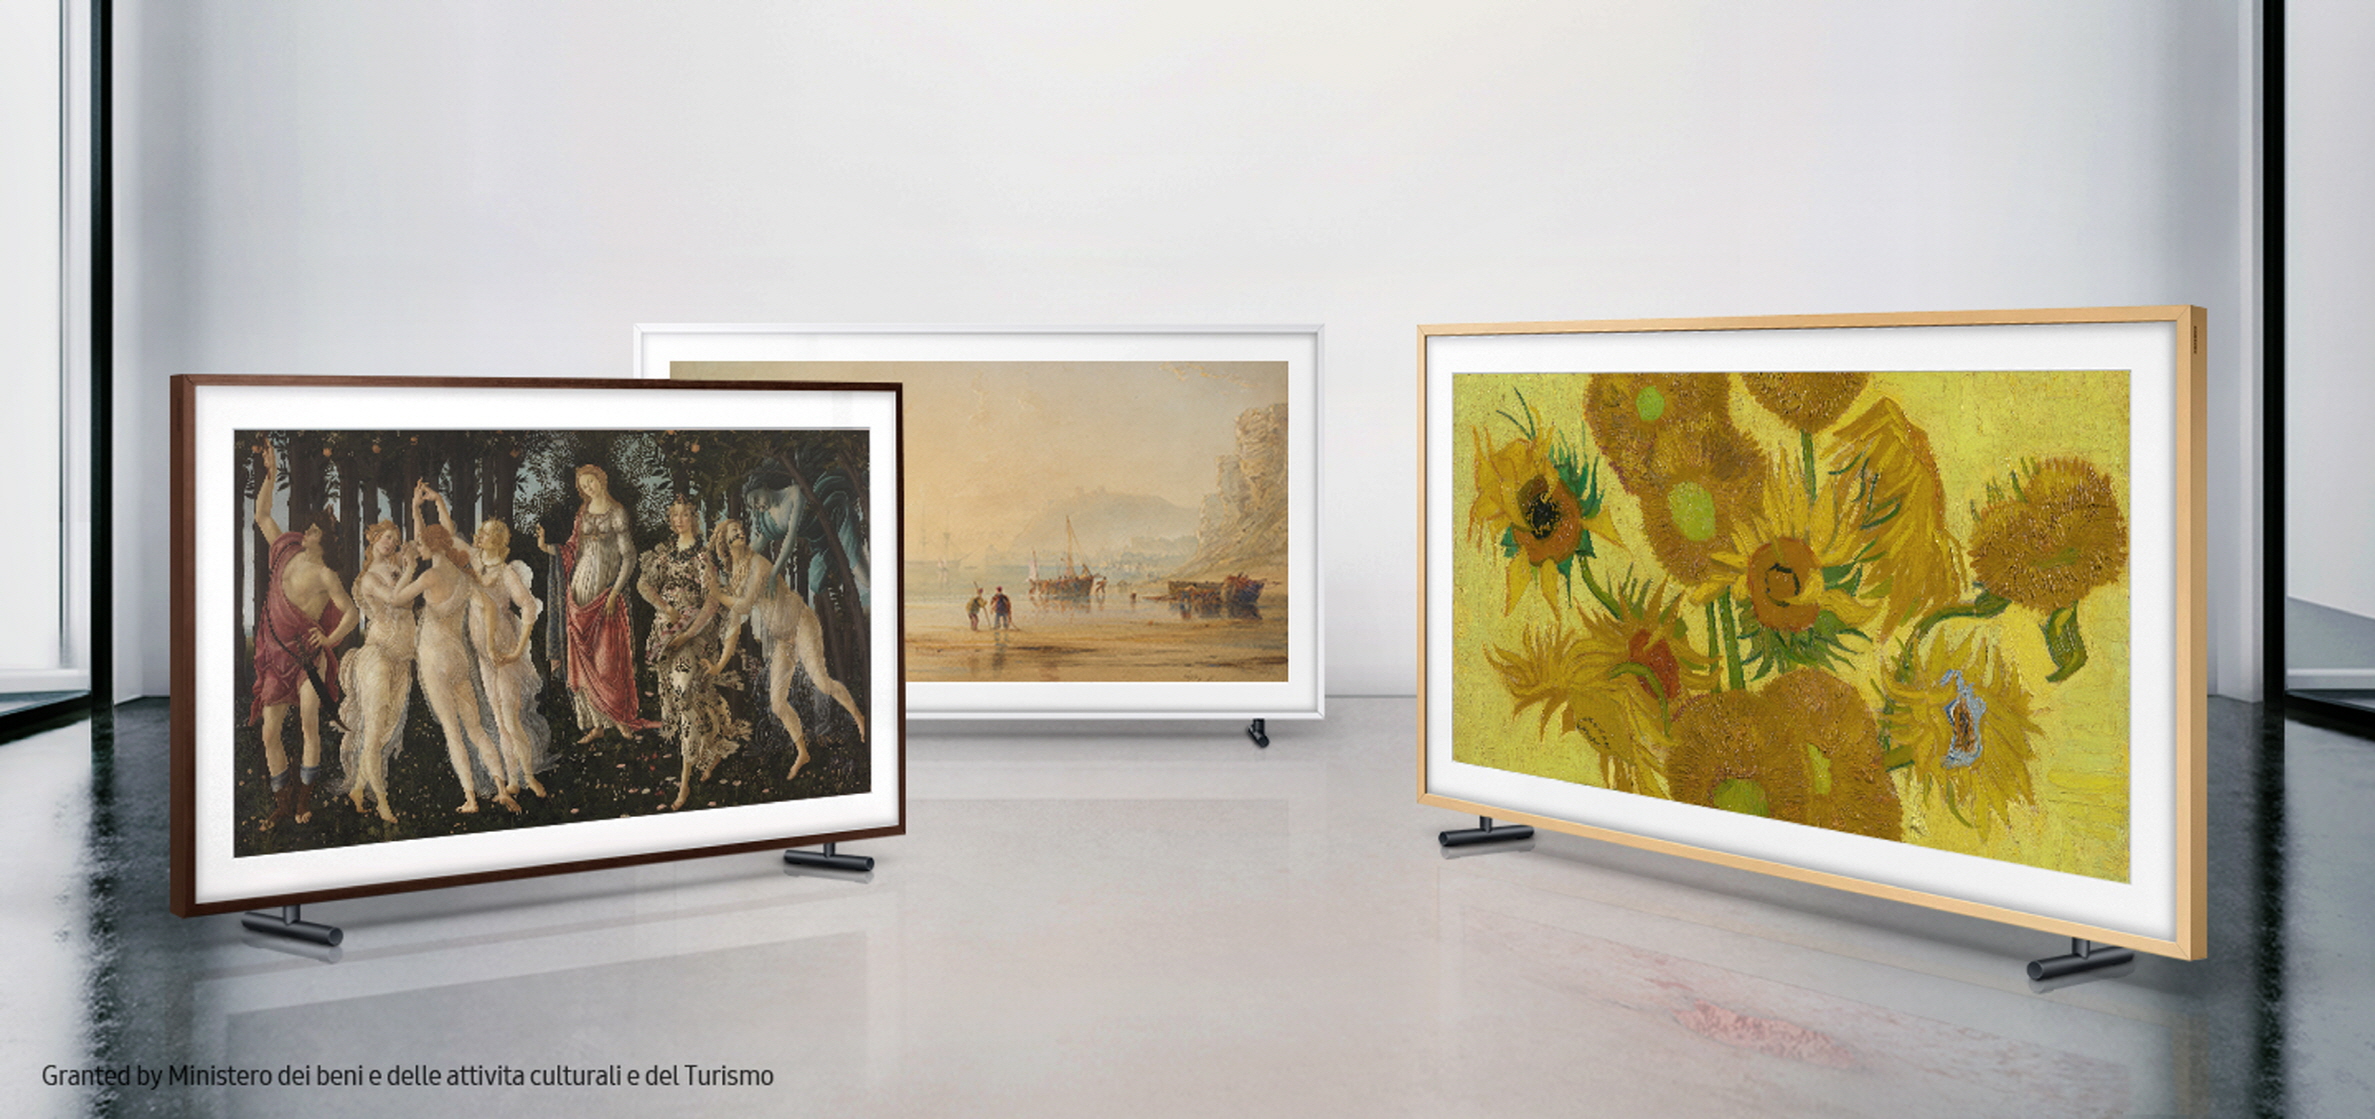 سامسونج تعلن تعاونها مع 3 متاحف عالمية بارزة لتعزيز الميزات الفنية والجمالية التي يقدمها تلفاز The Frame